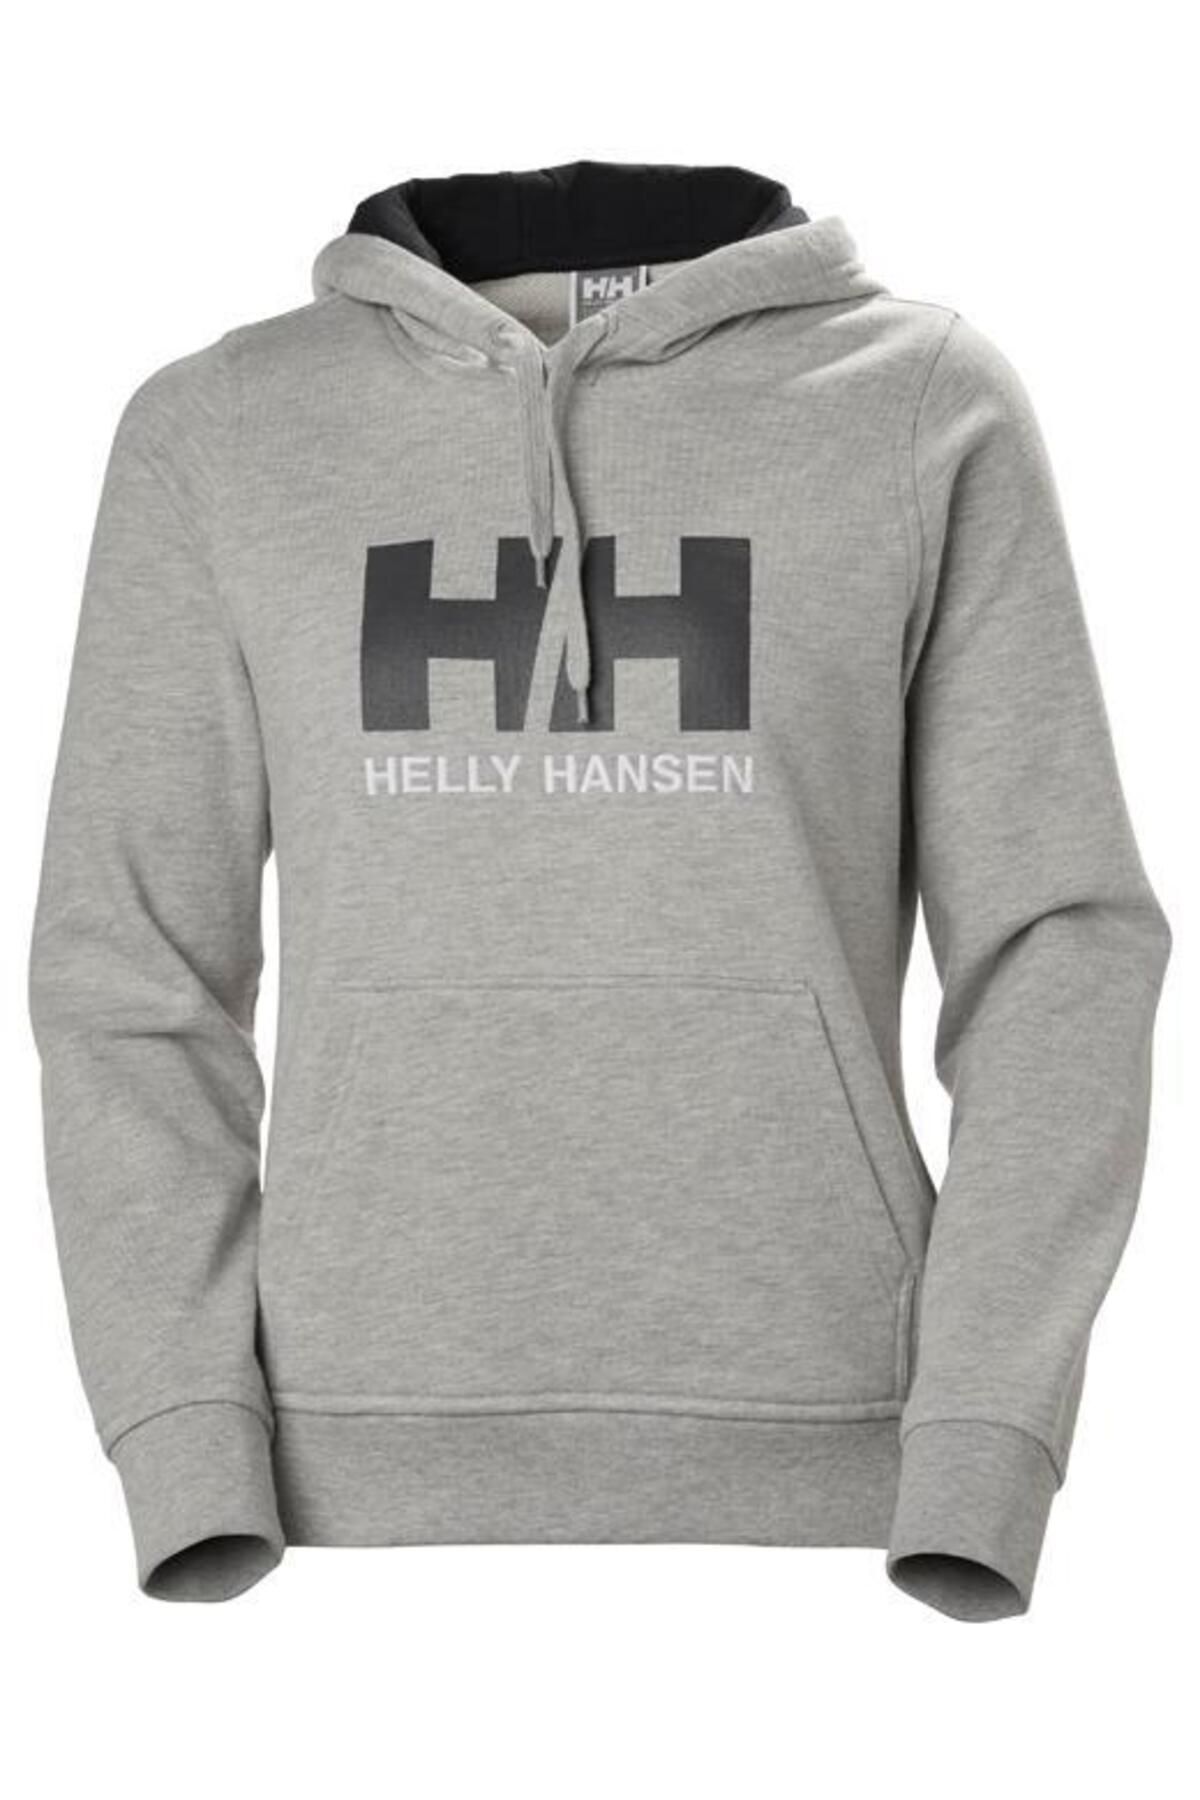 Helly Hansen Hh W Hh Logo Hoodie